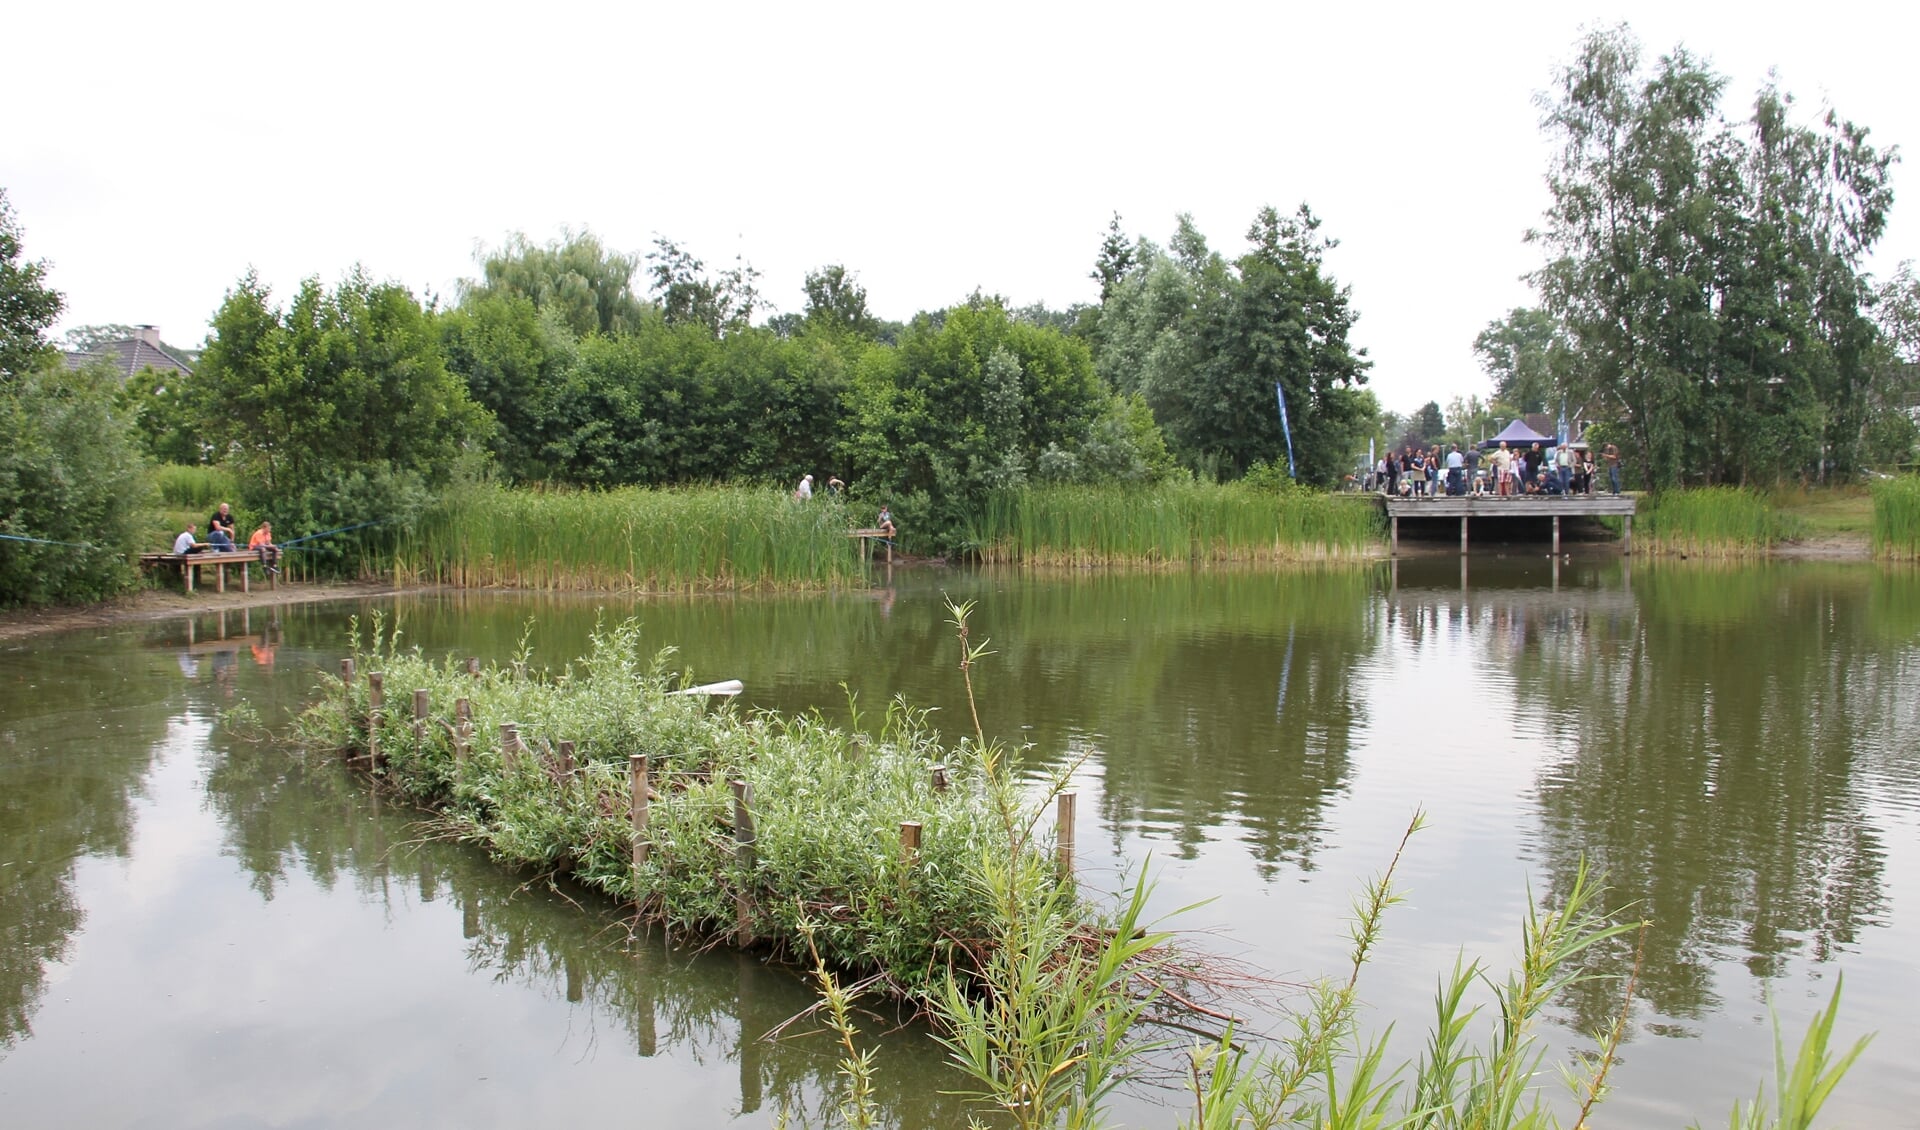 De eerste visparel van Nederland: visvijver 't Joostink in wijk Biesterveld. Foto: Liesbeth Spaansen